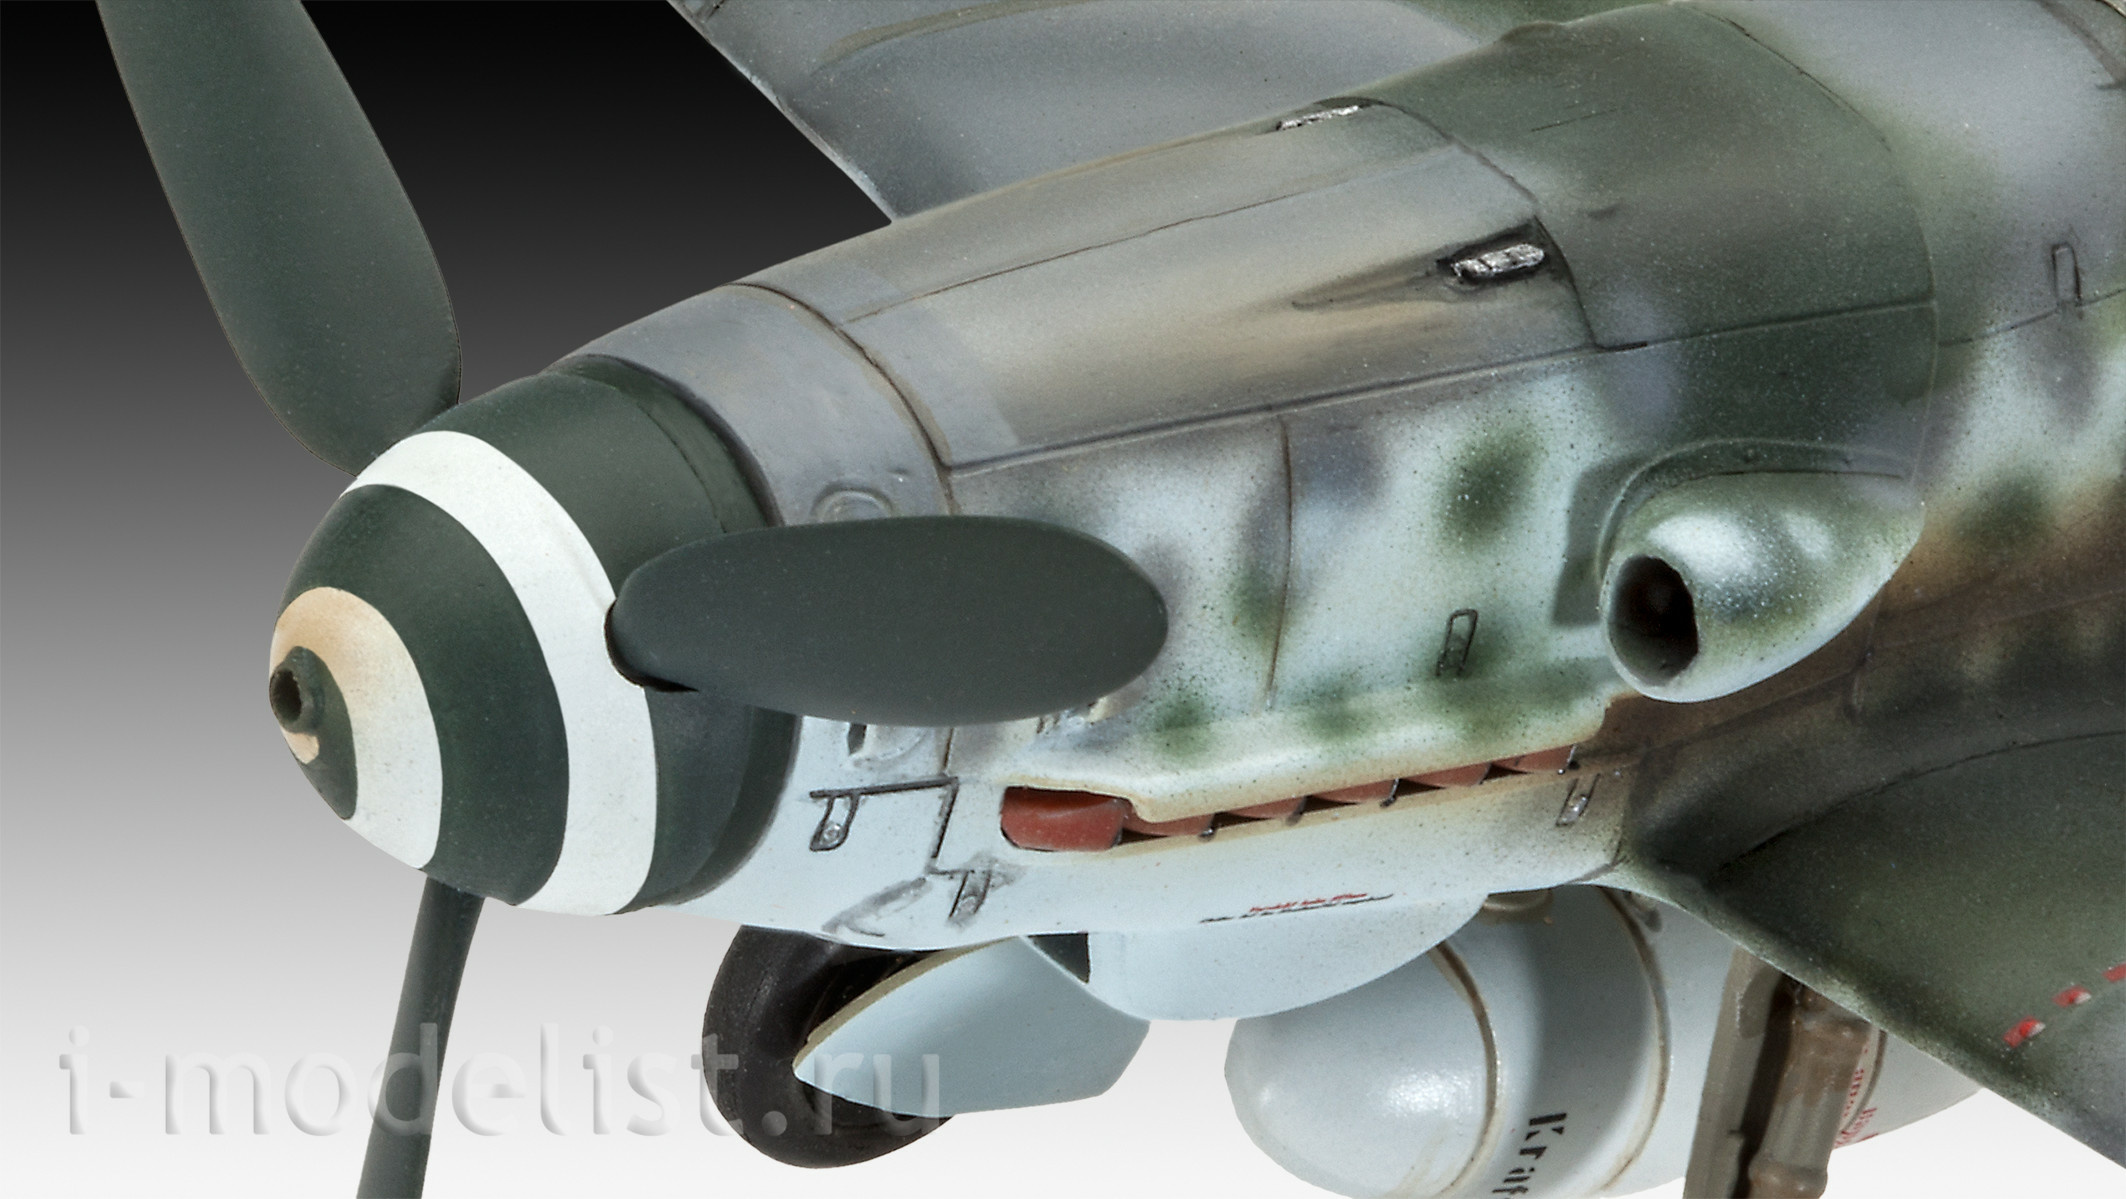 03958 Revell 1/48 Messerschmitt Bf109 G-10